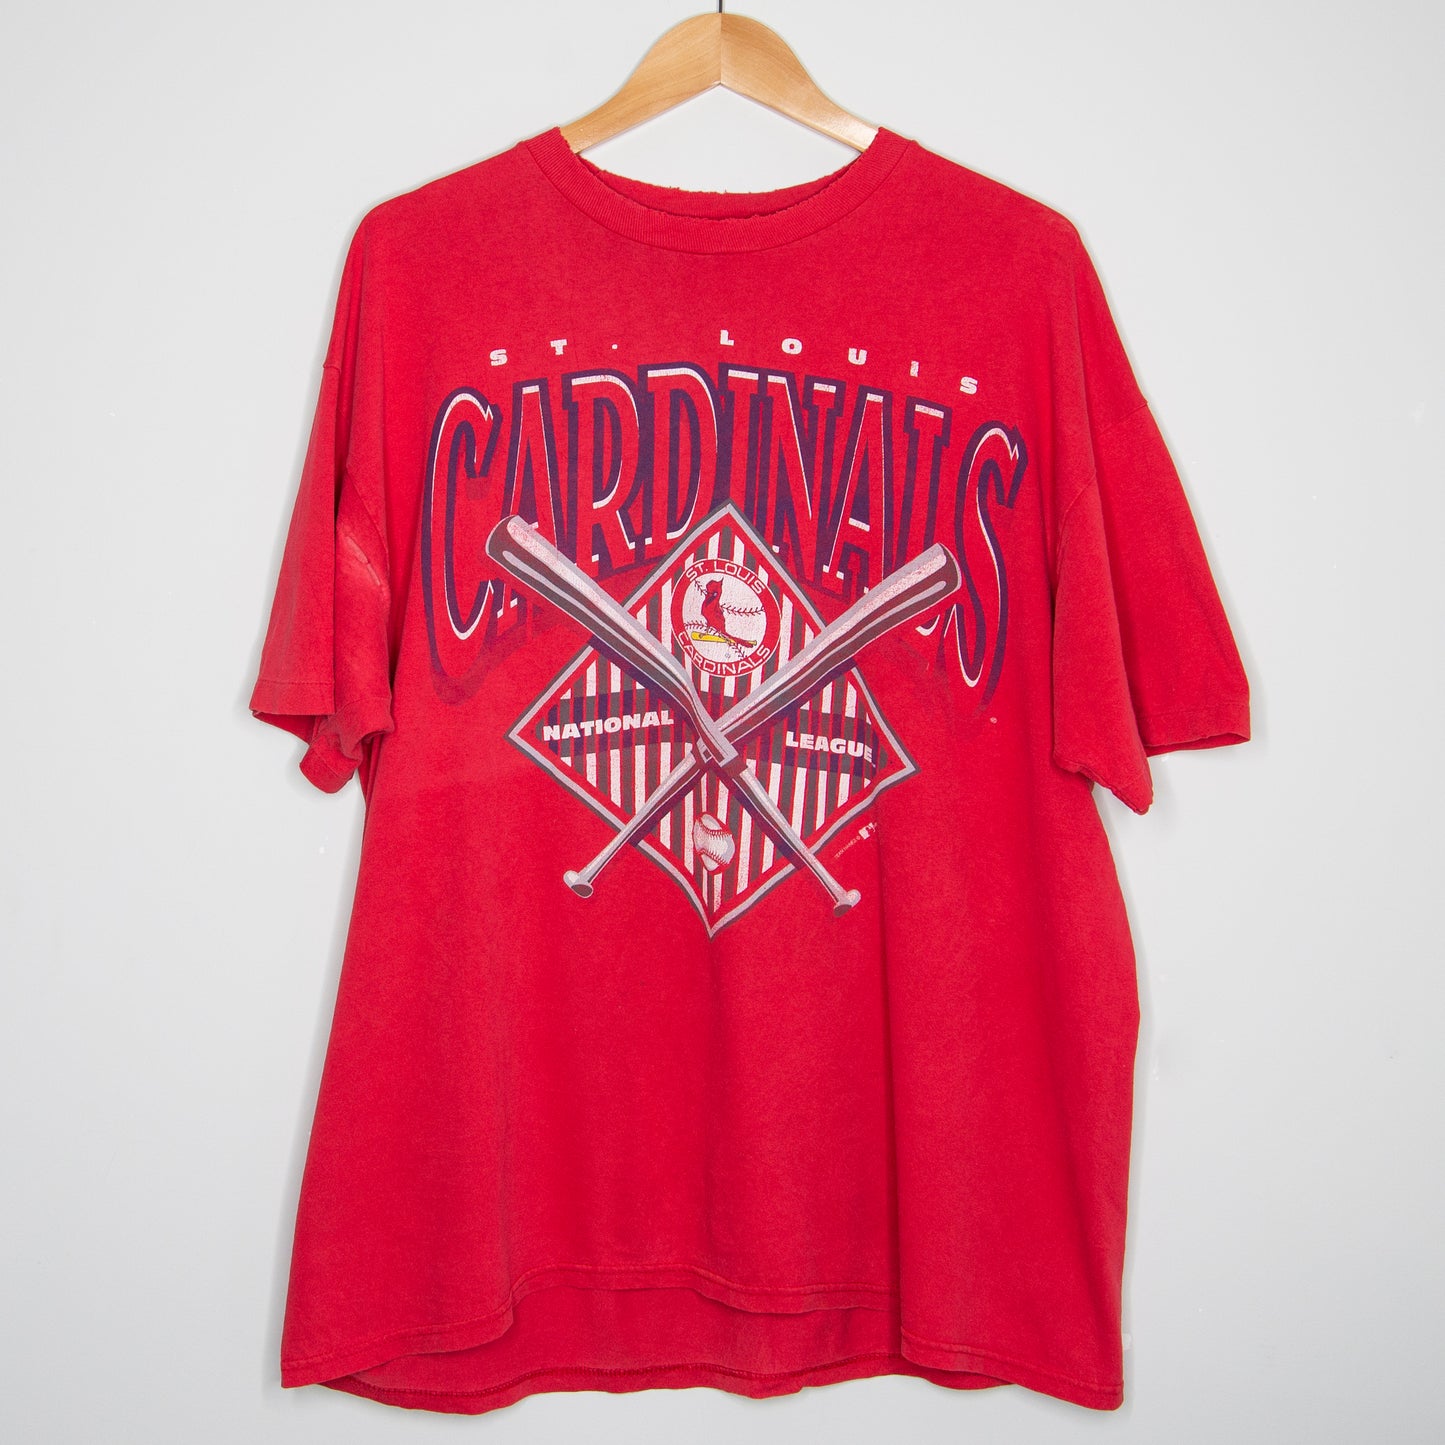 1993 St. Louis Cardinals T-Shirt XL